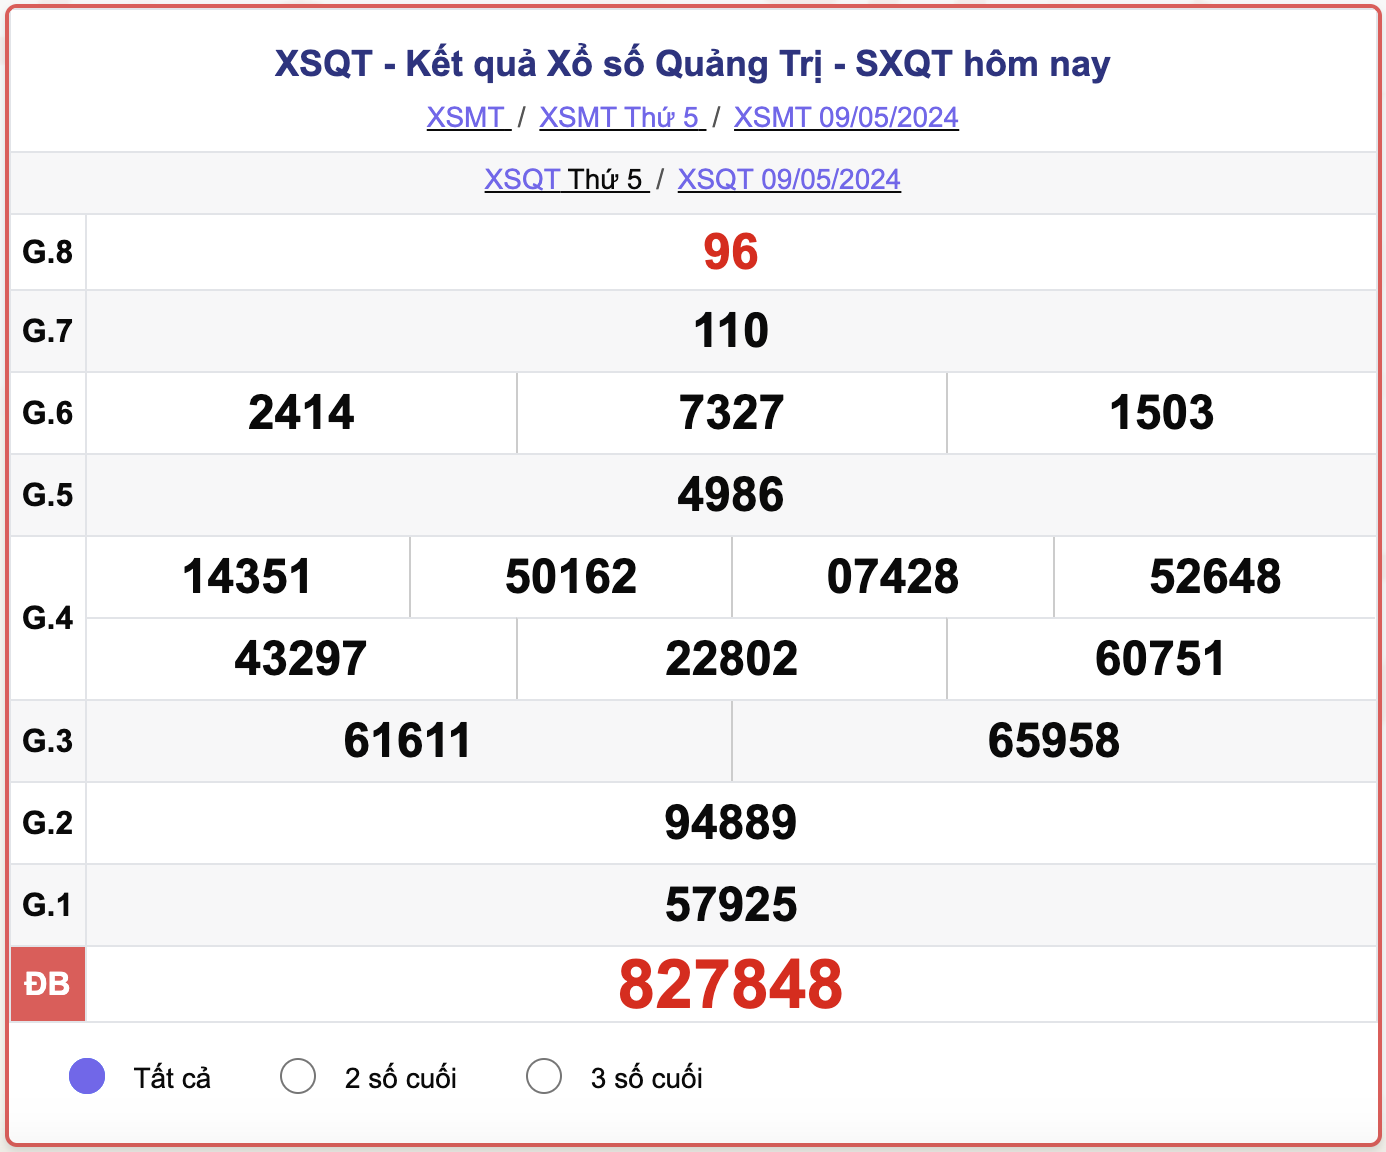 XSQT thứ Năm, kết quả xổ số Quảng Trị ngày 9/5/2024.